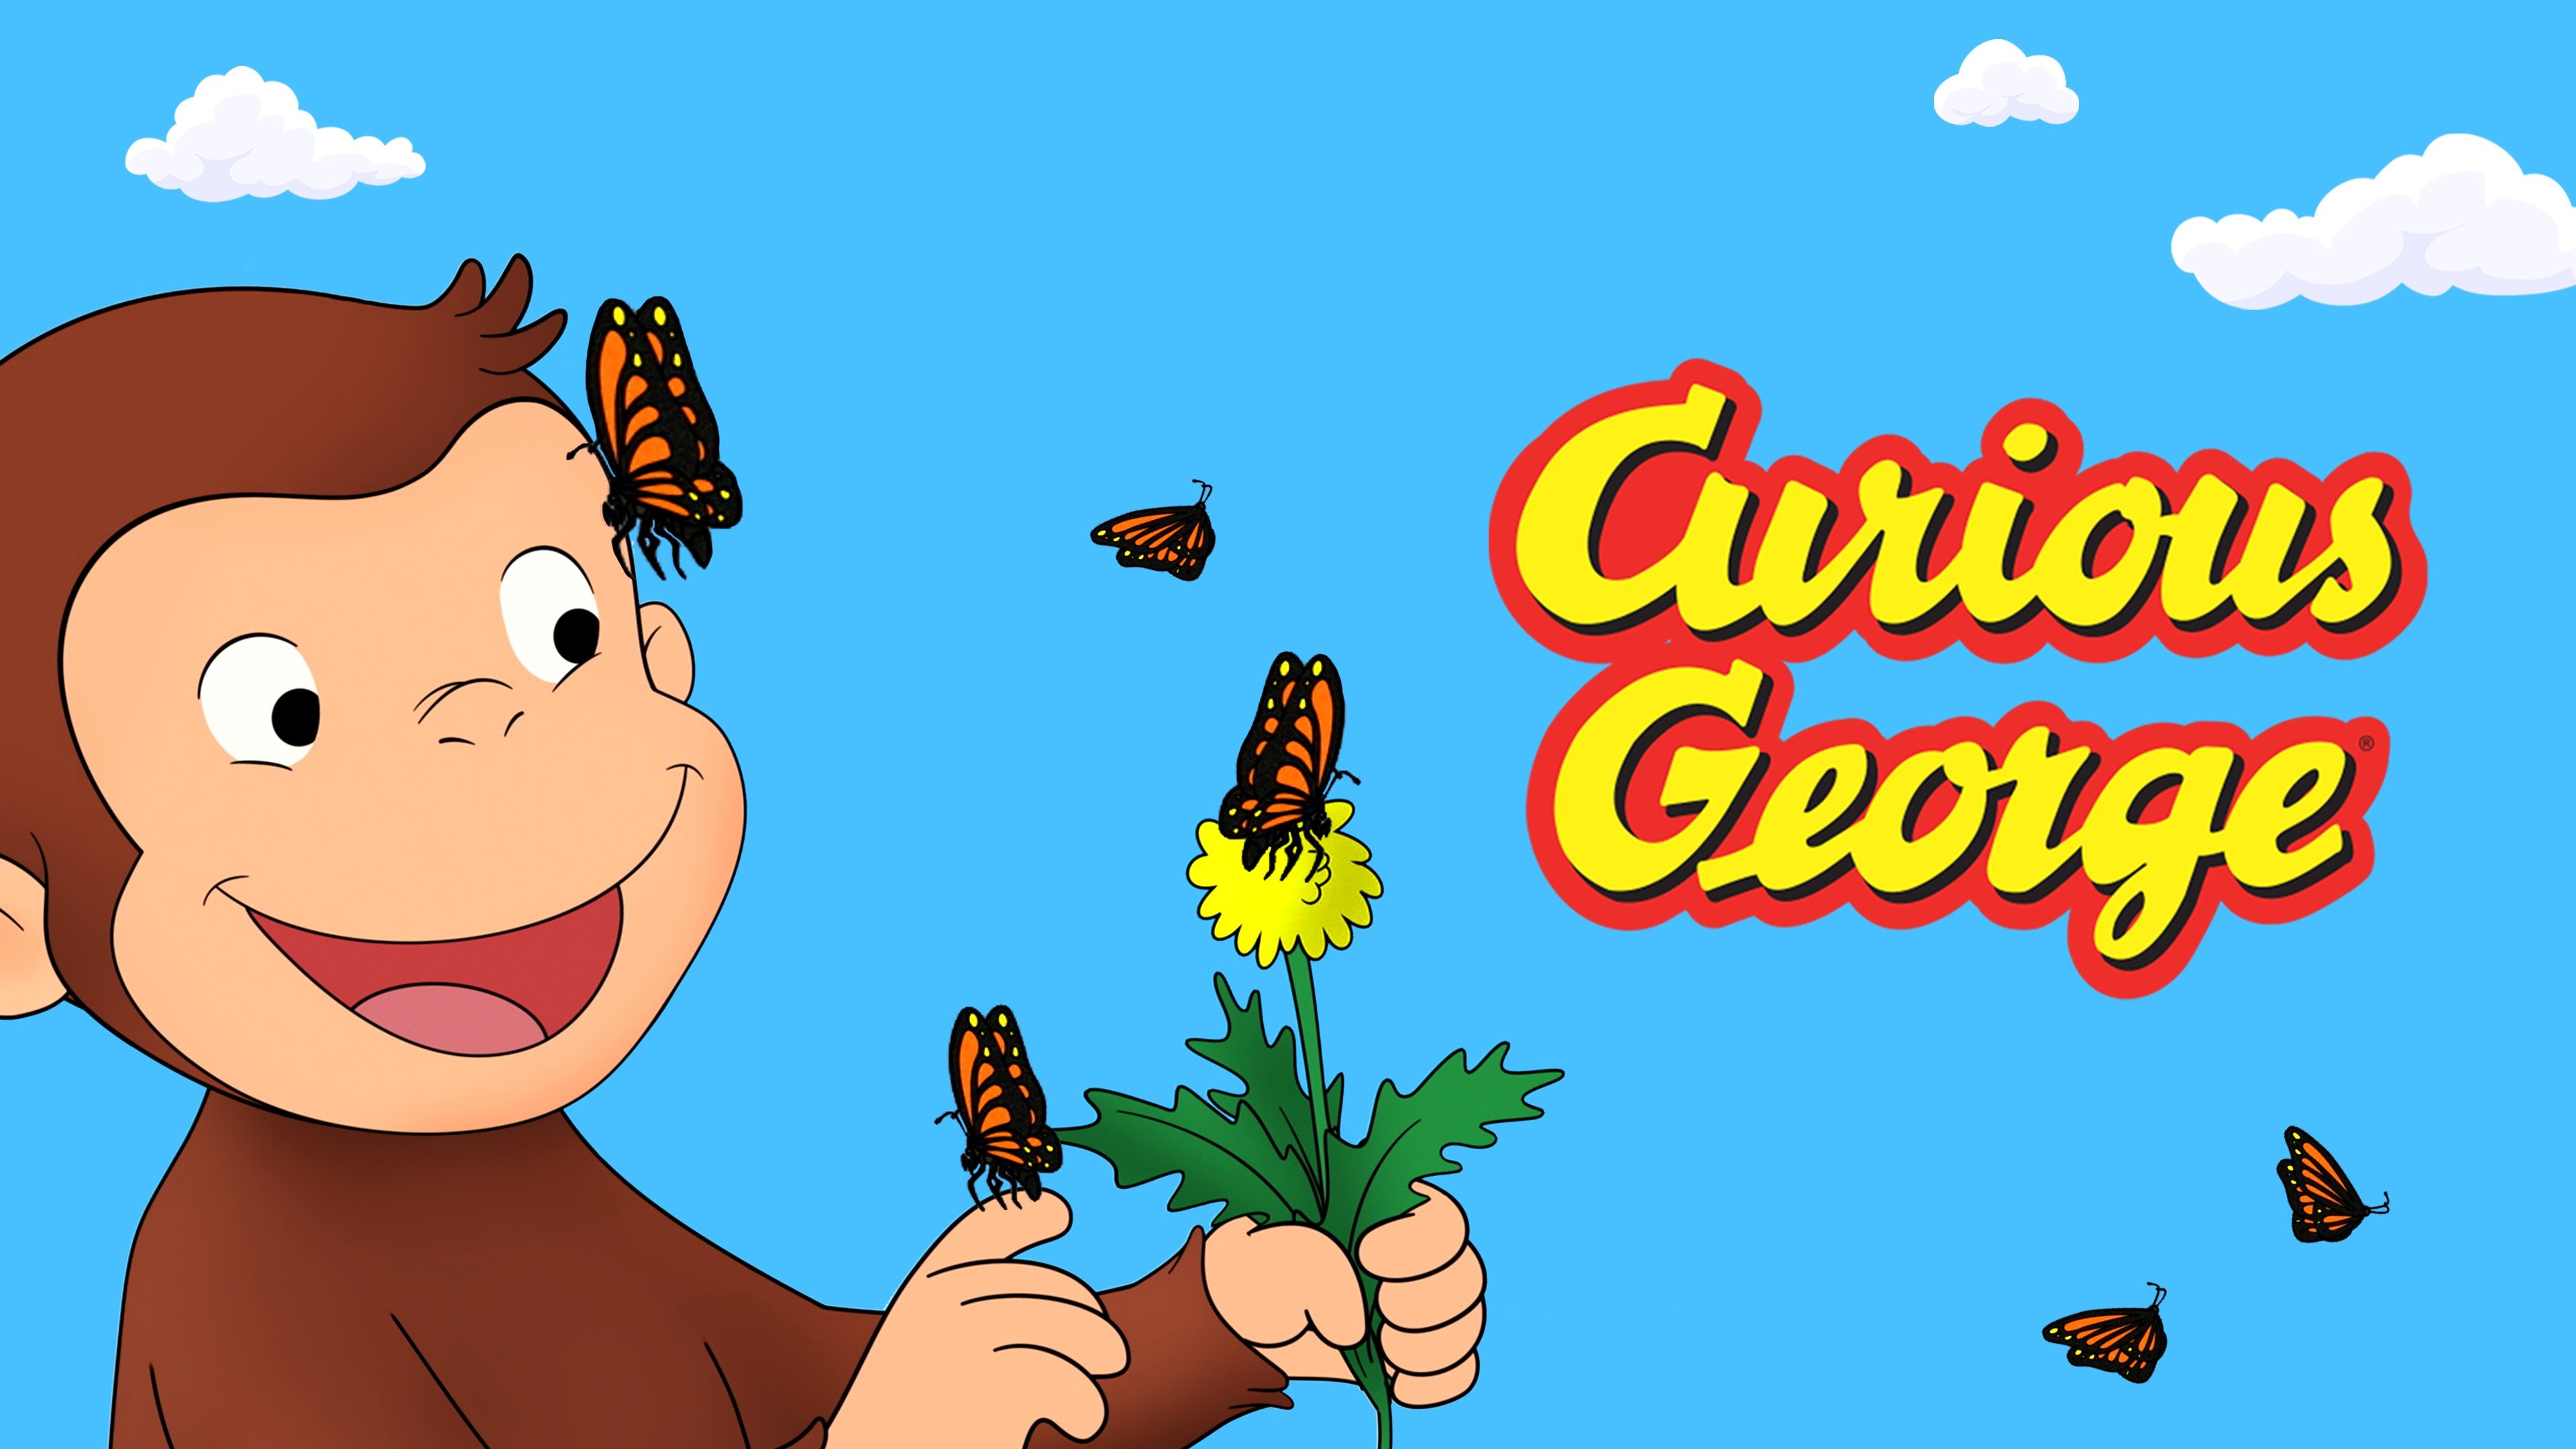 curious george episodes cast